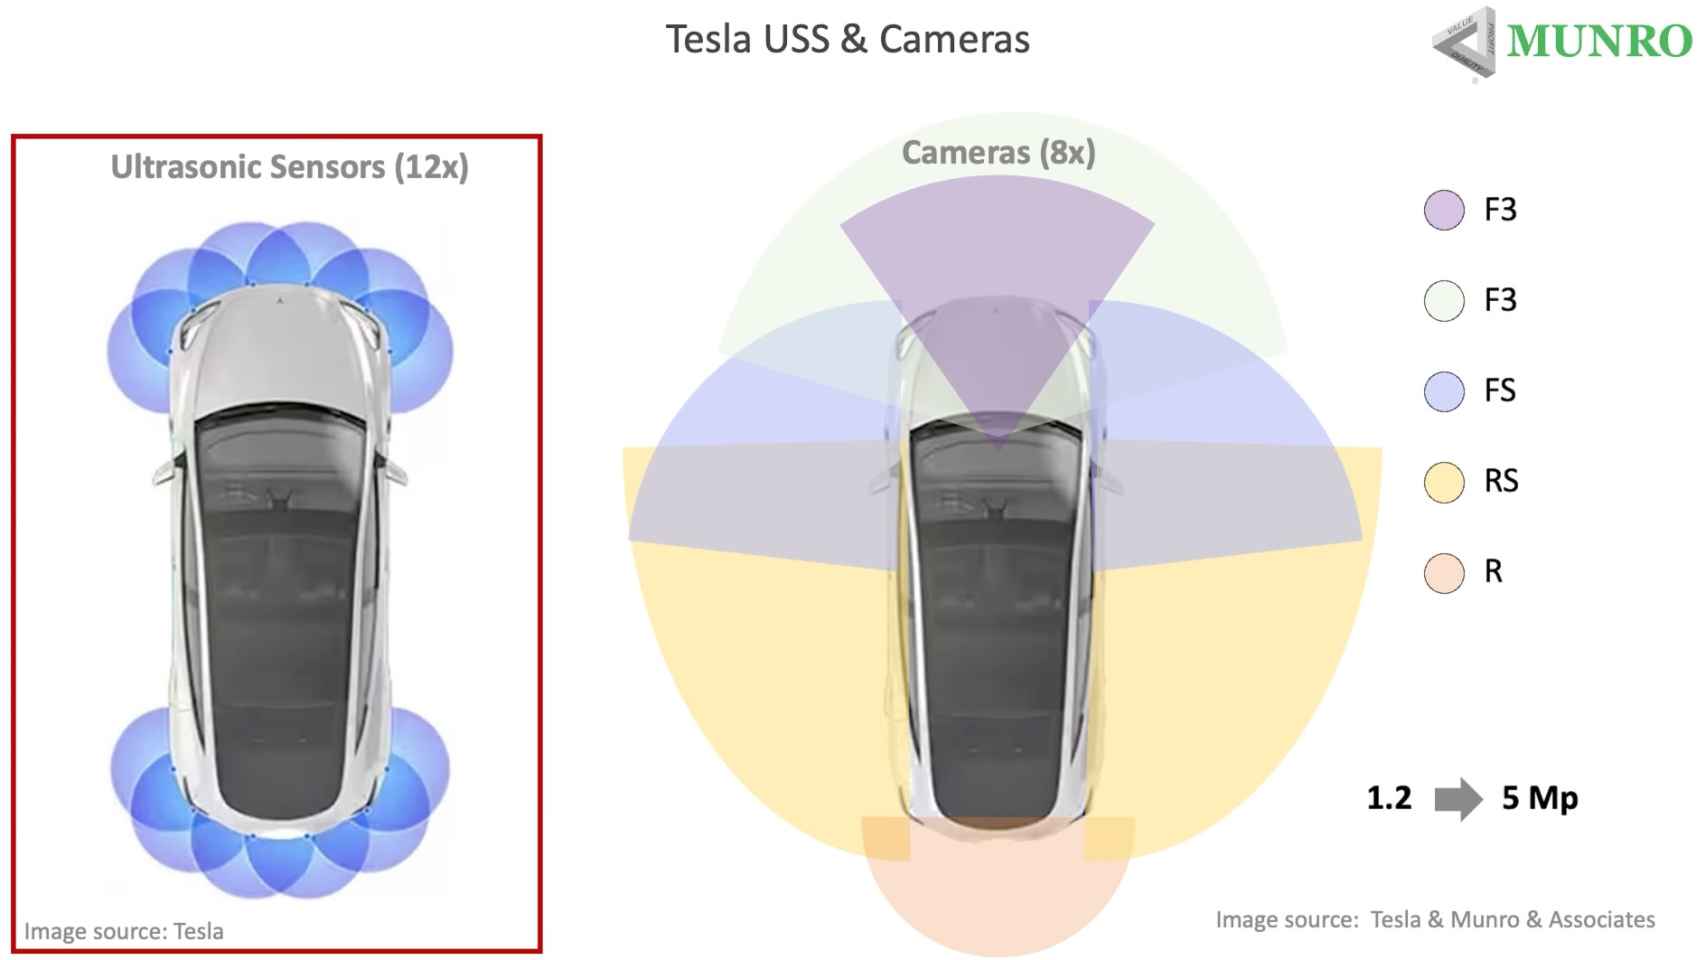 Comparación de sensores ultrasónicos y cámaras de Tesla Vision